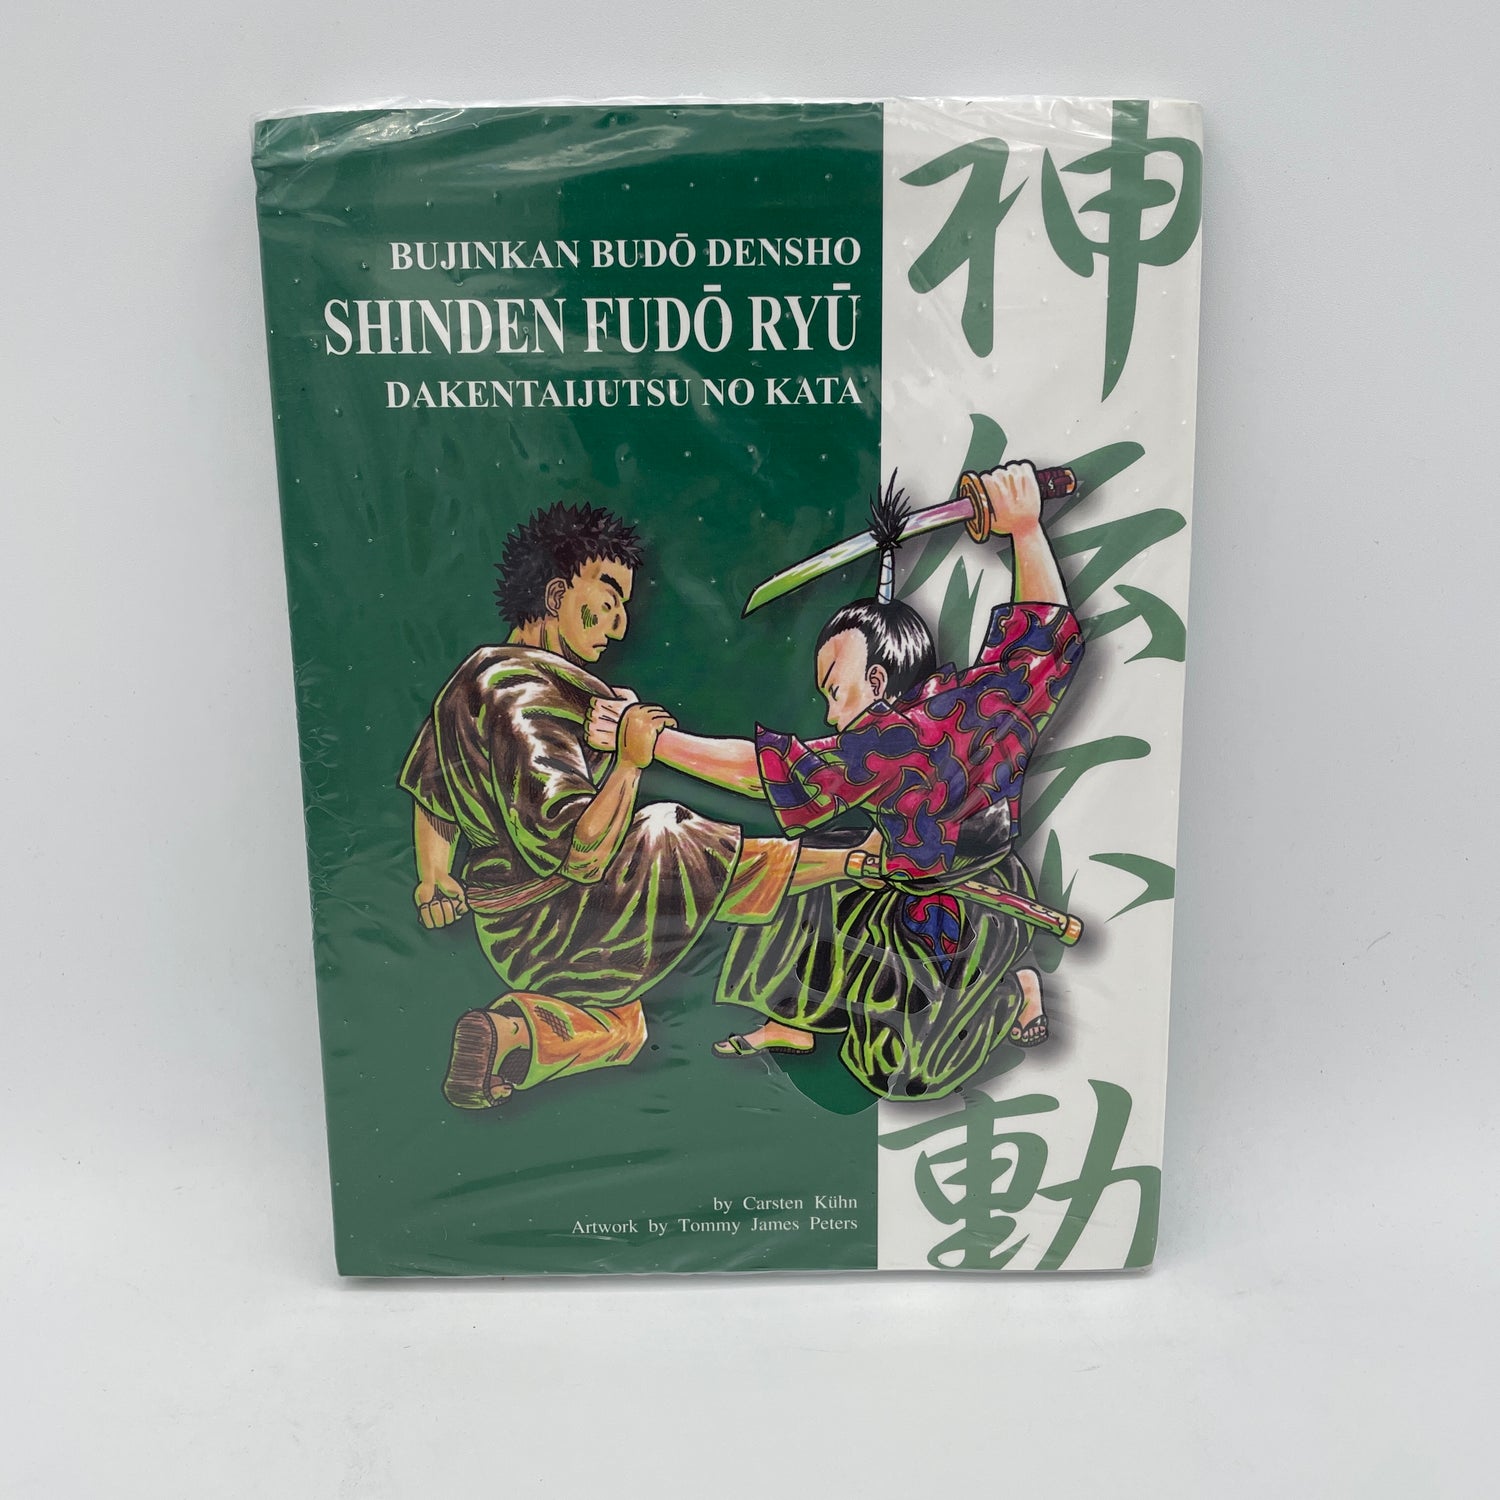 Bujinkan Budo Densho Libro 5: Shinden Fudo Ryu Dakentaijutsu de Carsten Kuhn